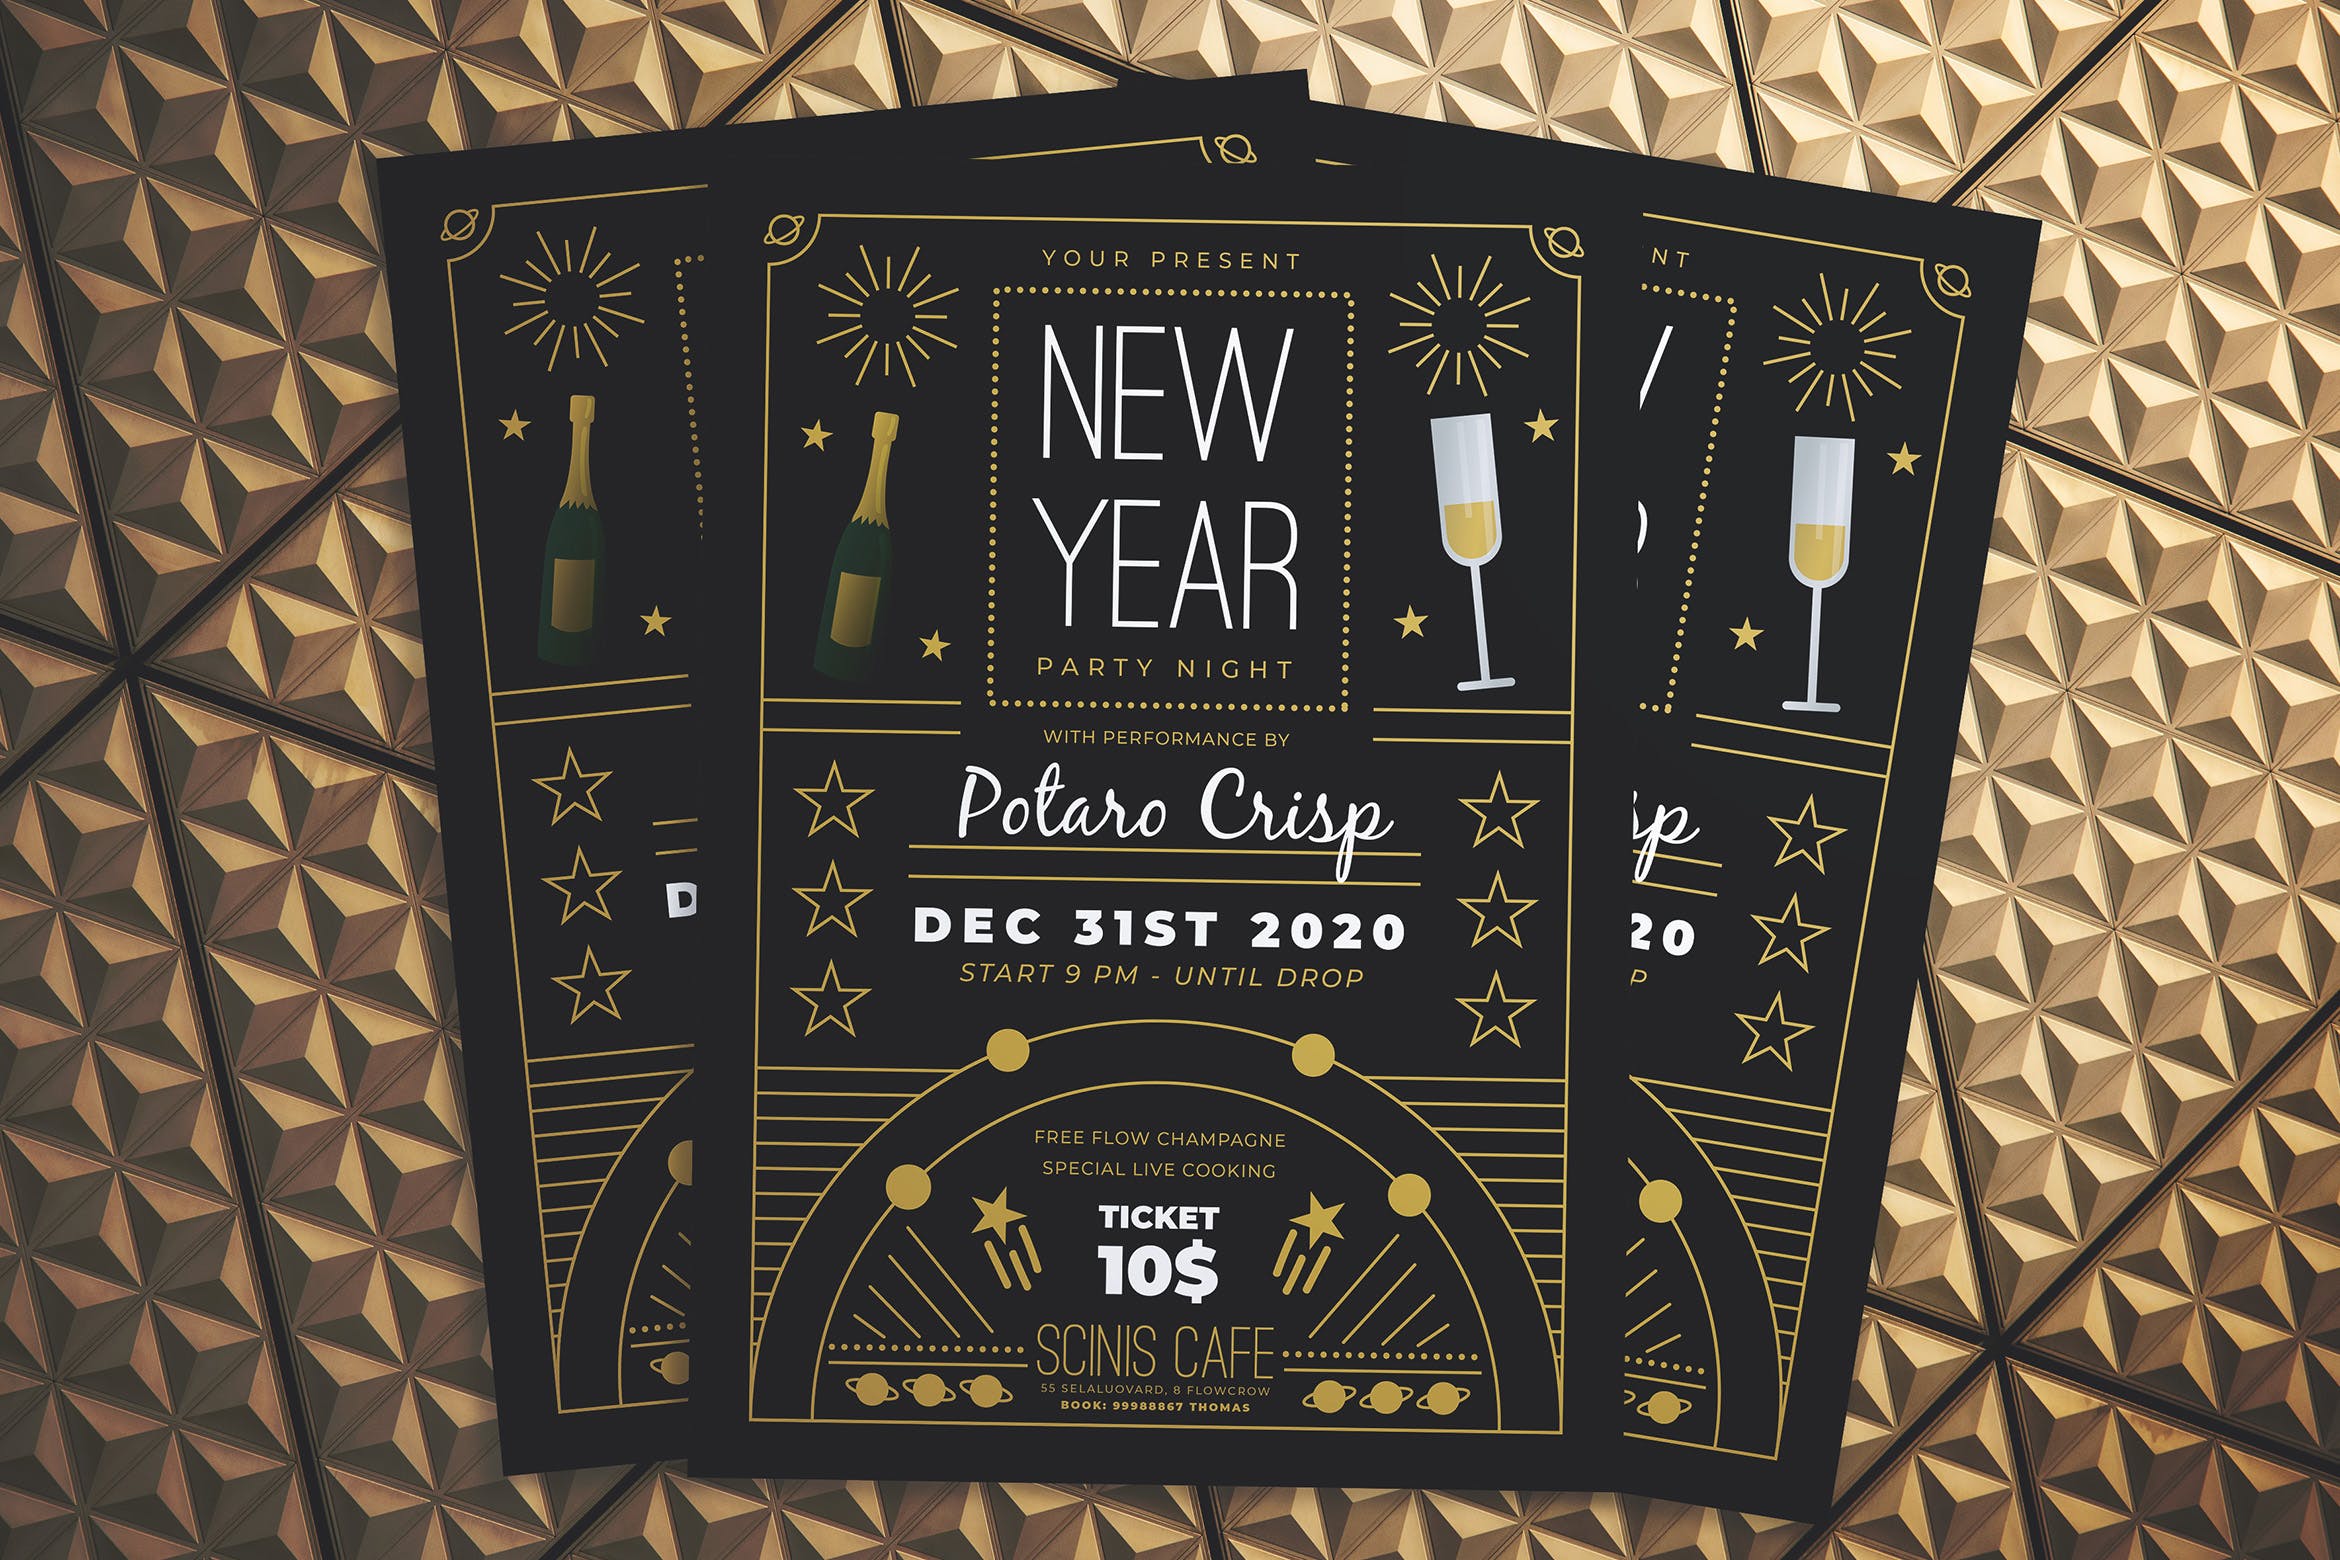 复古设计风格新年晚会海报传单第一素材精选PSD模板 New Year Party Night Flyer插图